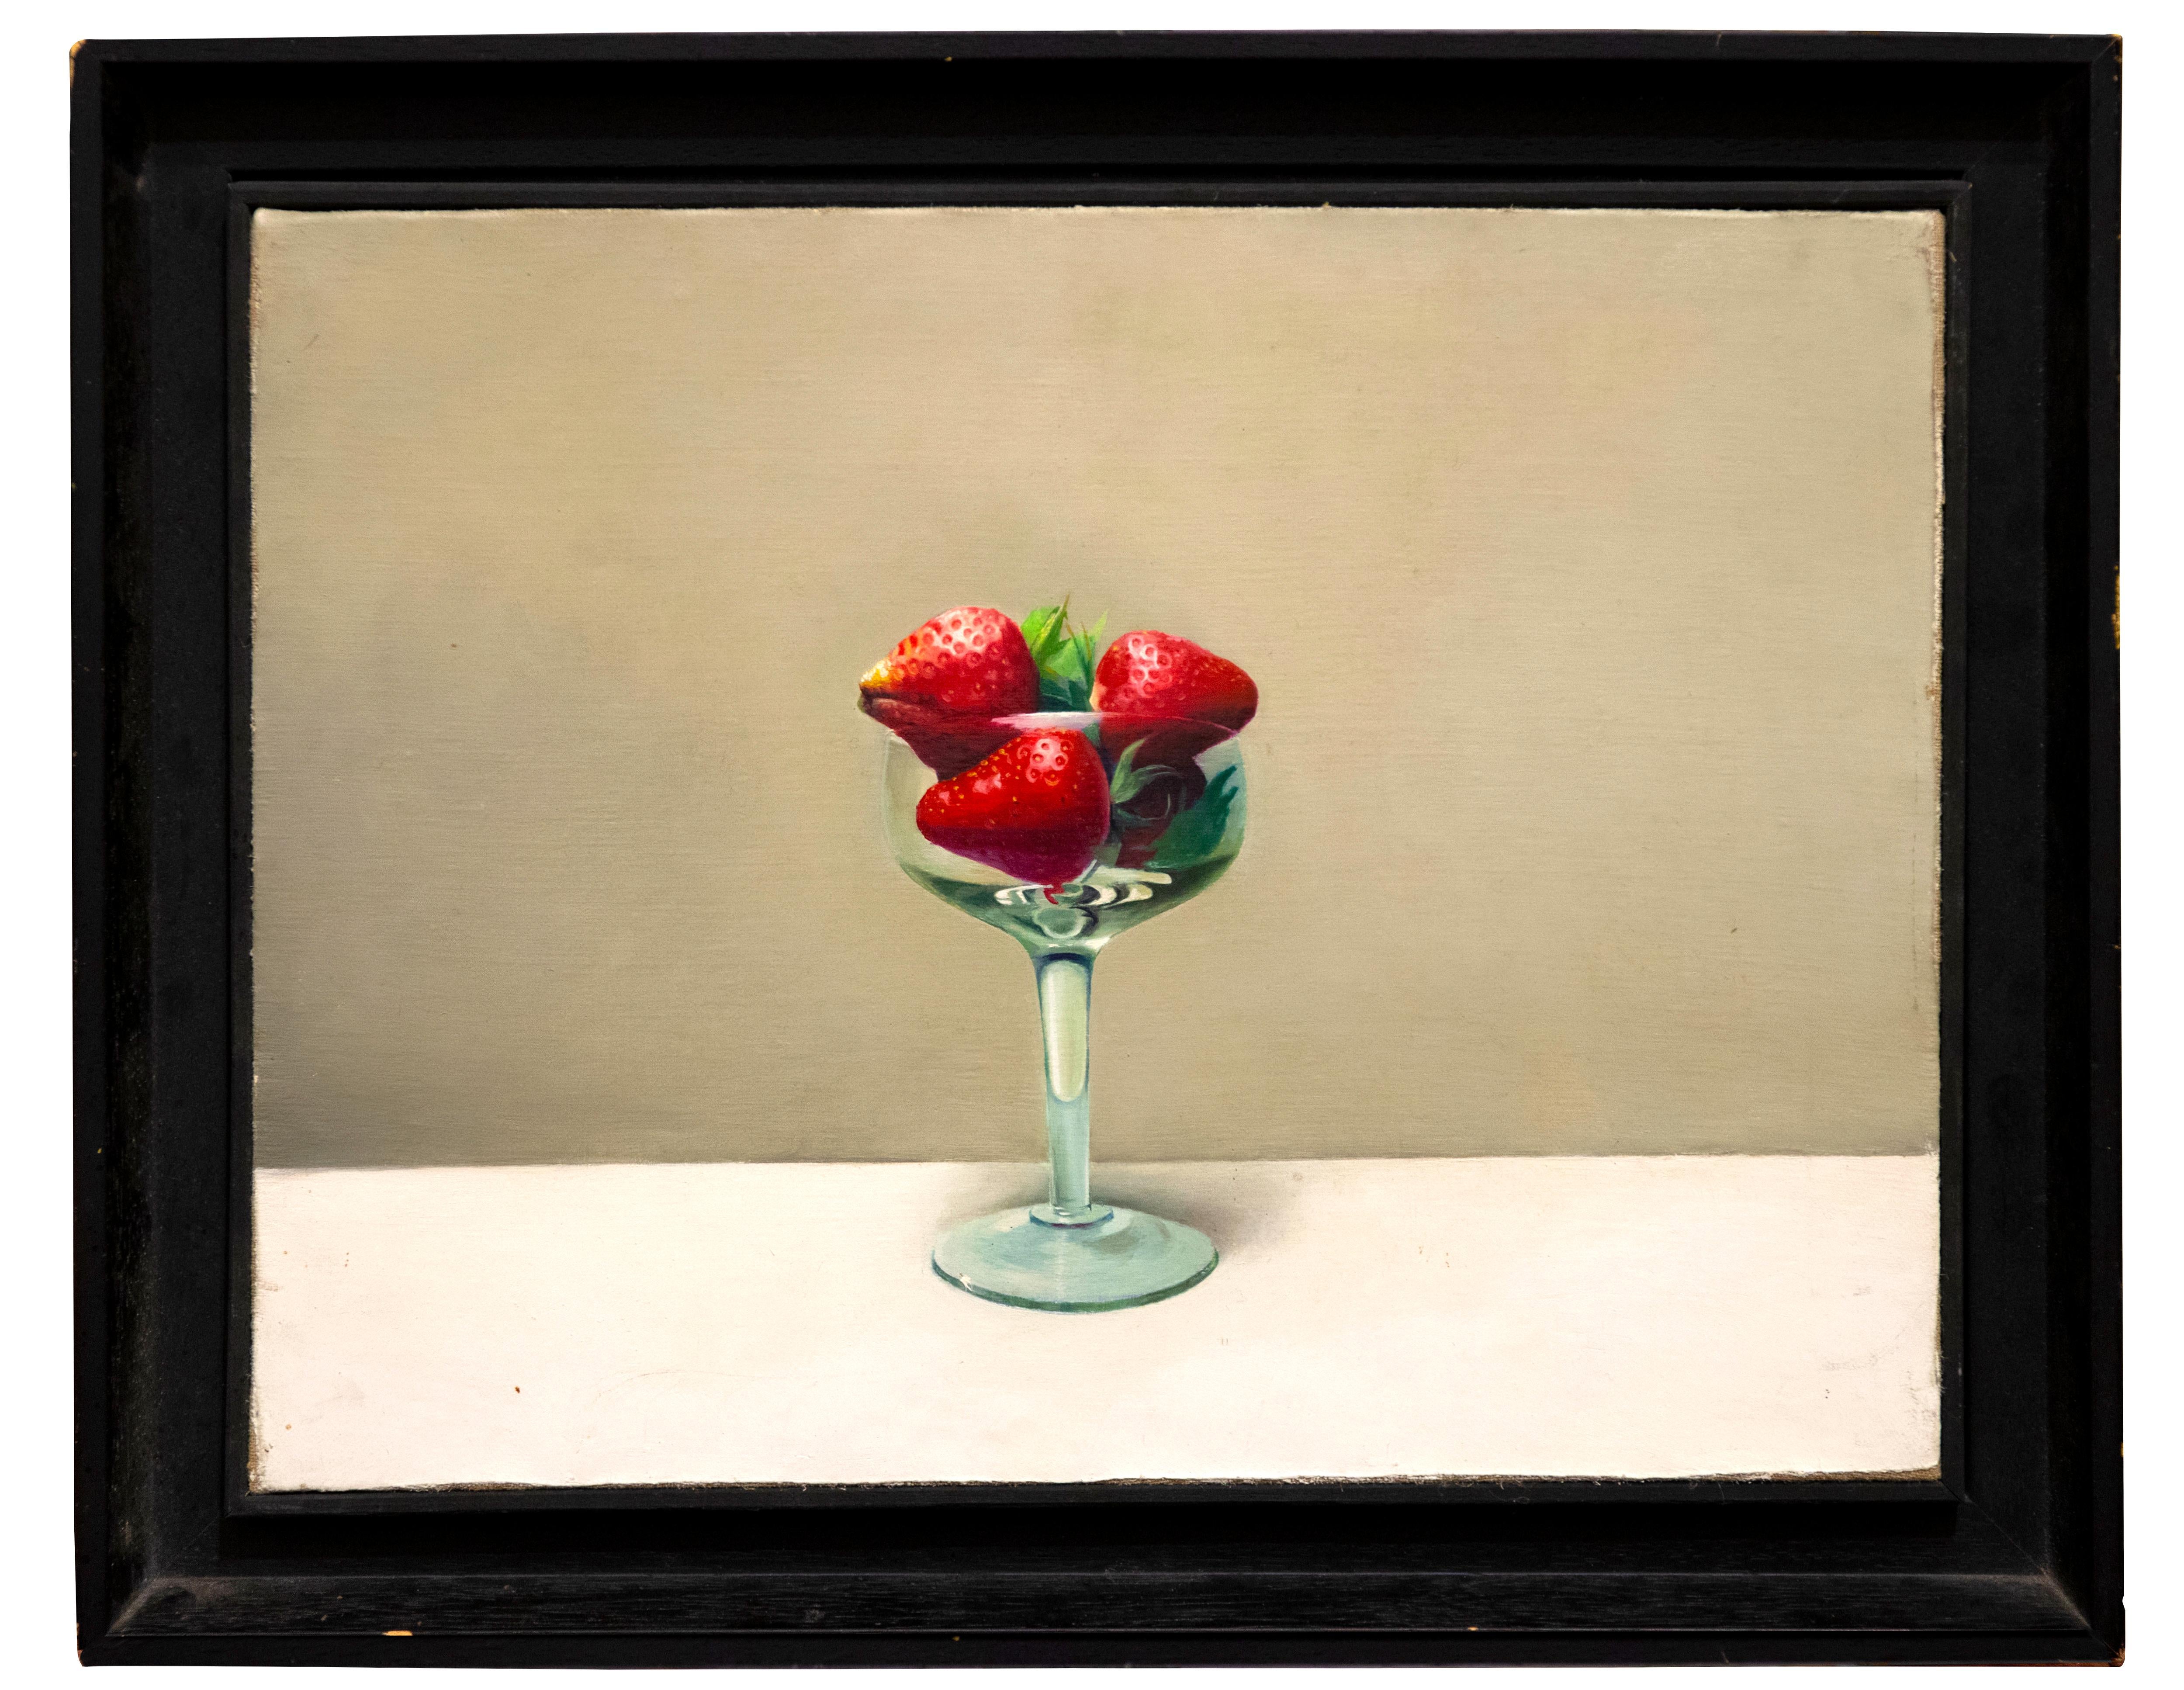  Tasse avec fraises - Huile sur toile de Zhang Wei Guang (Mirror) - 2000